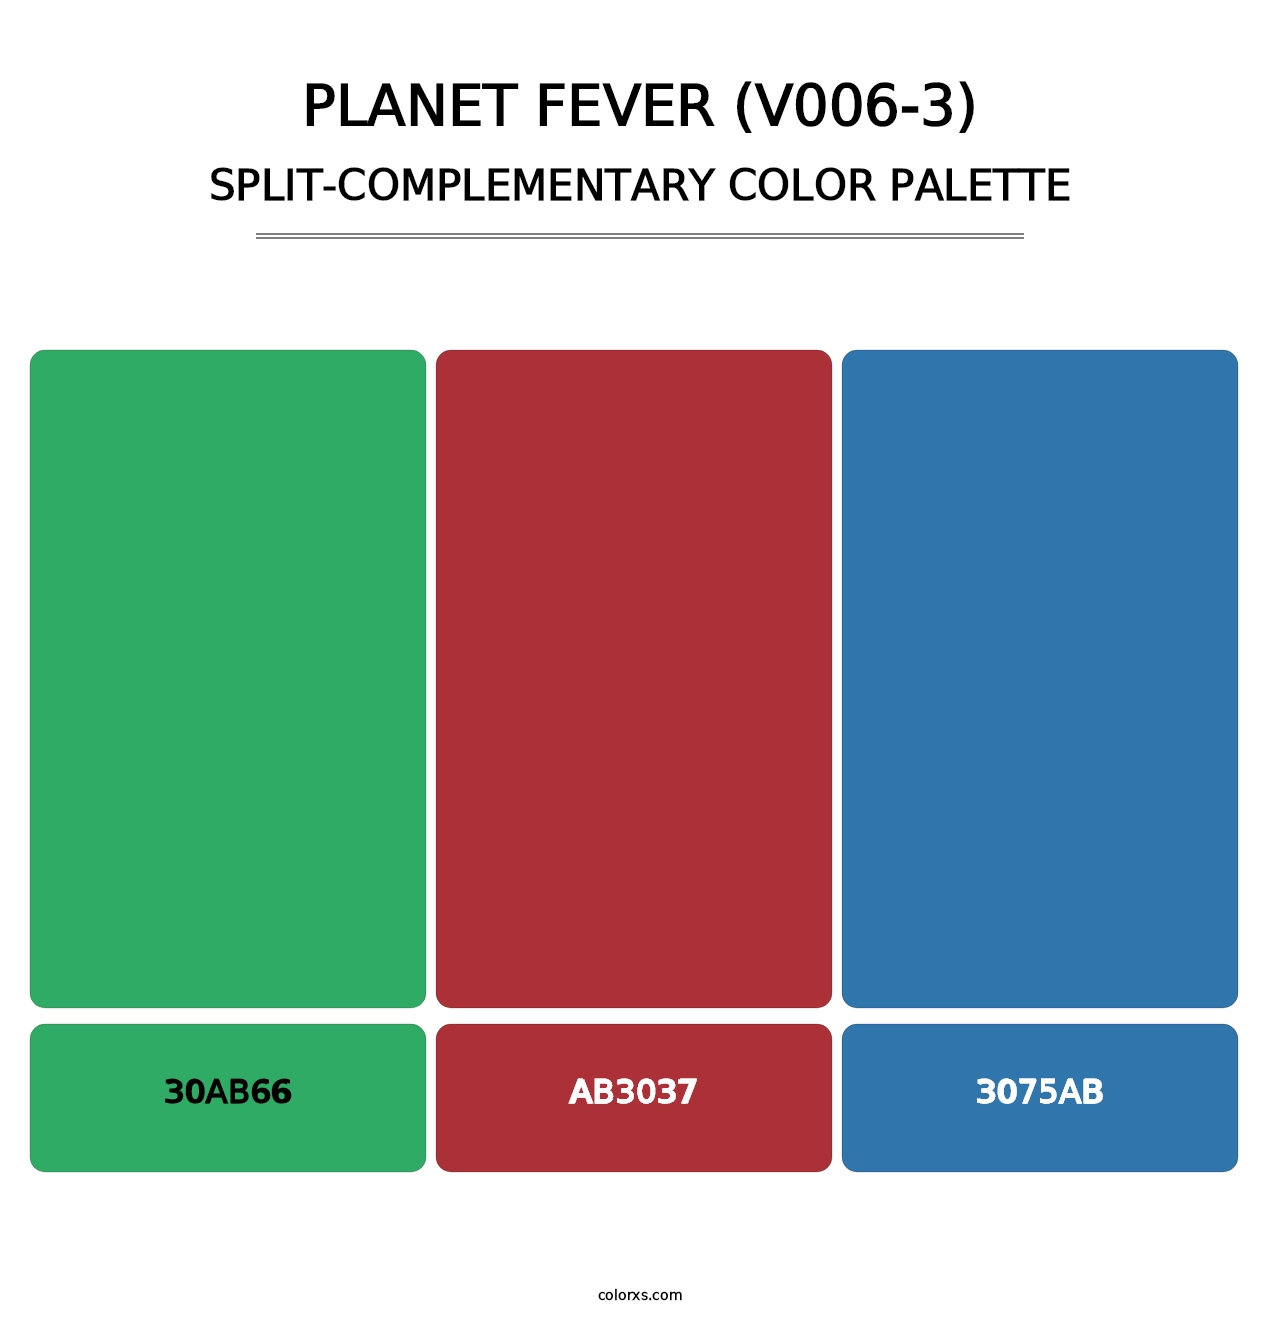 Planet Fever (V006-3) - Split-Complementary Color Palette